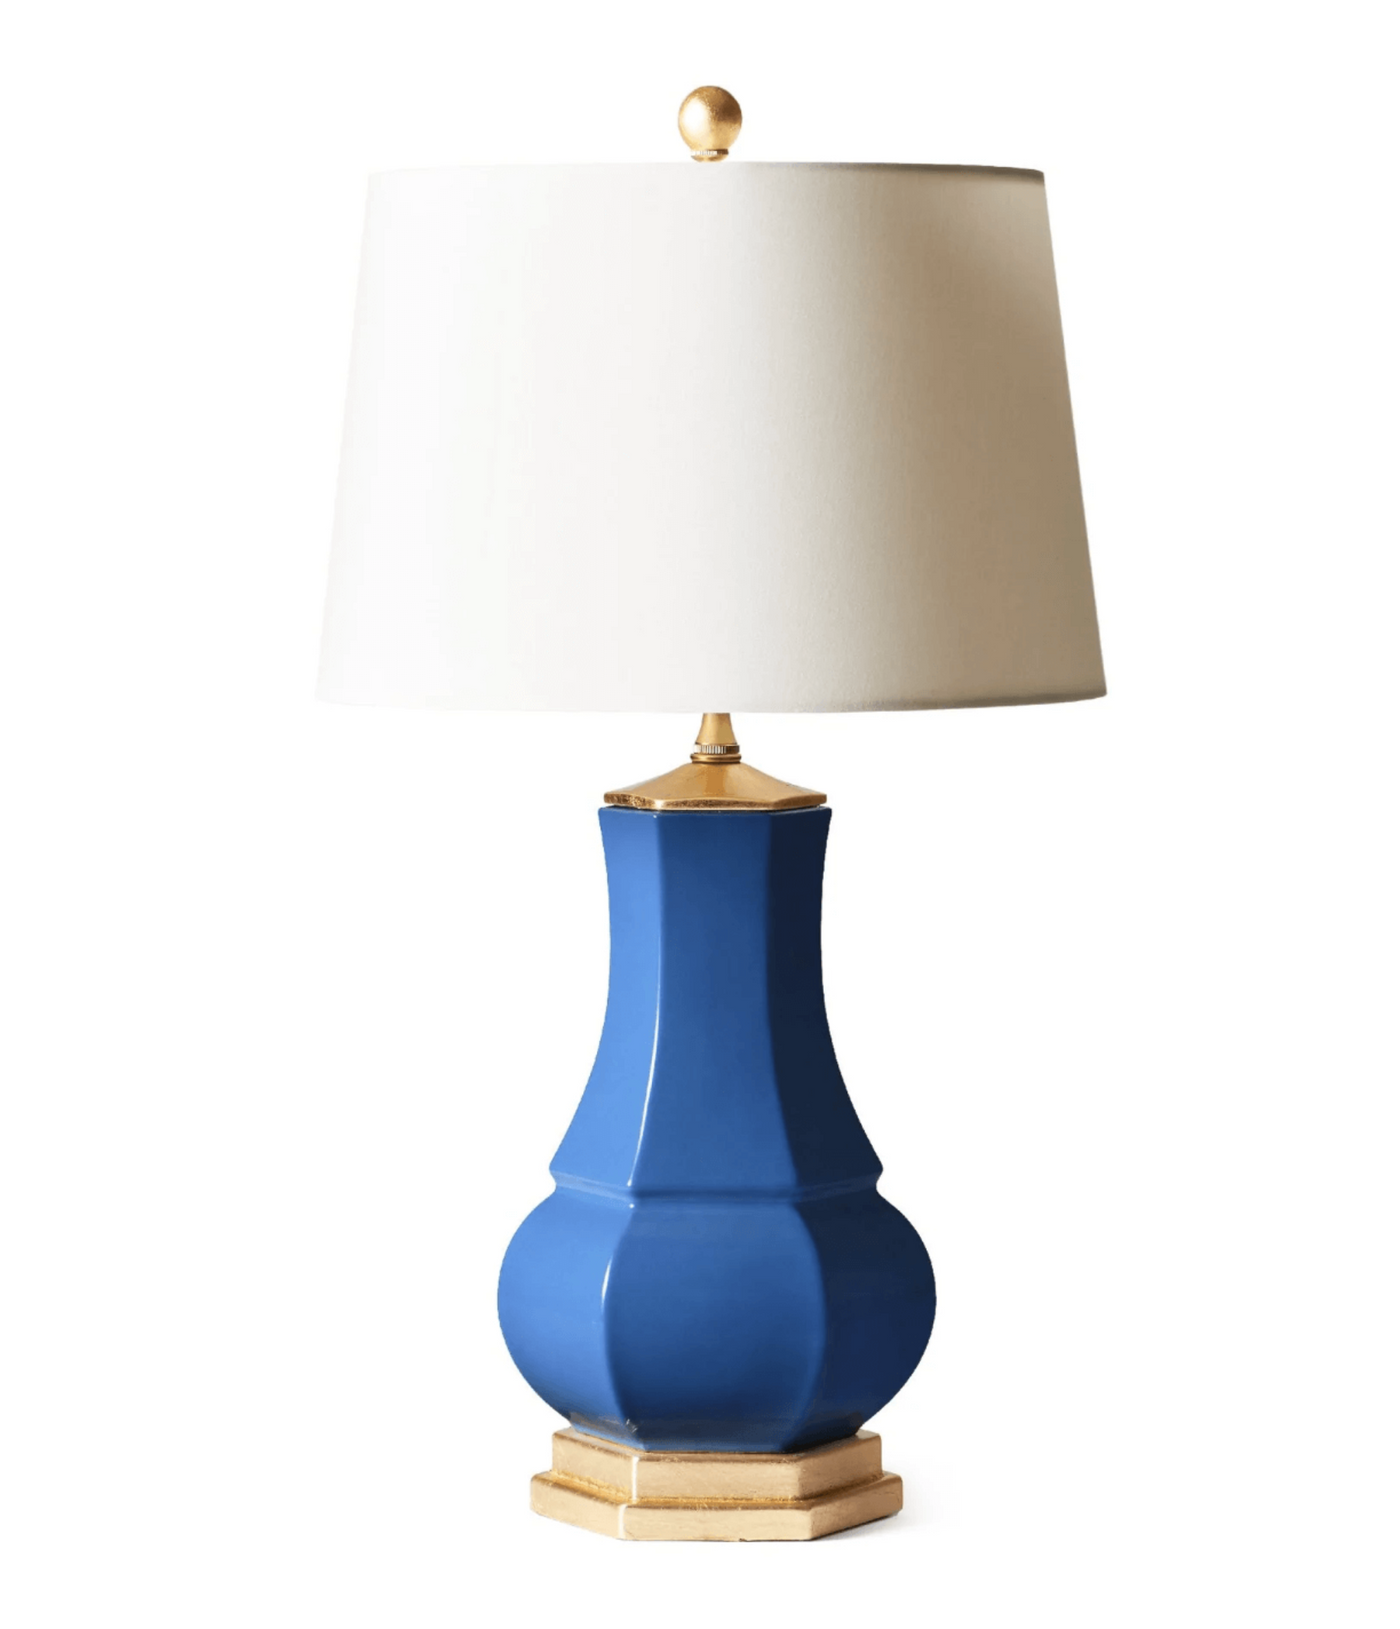 Hexagonal Vase Lamp, Blue